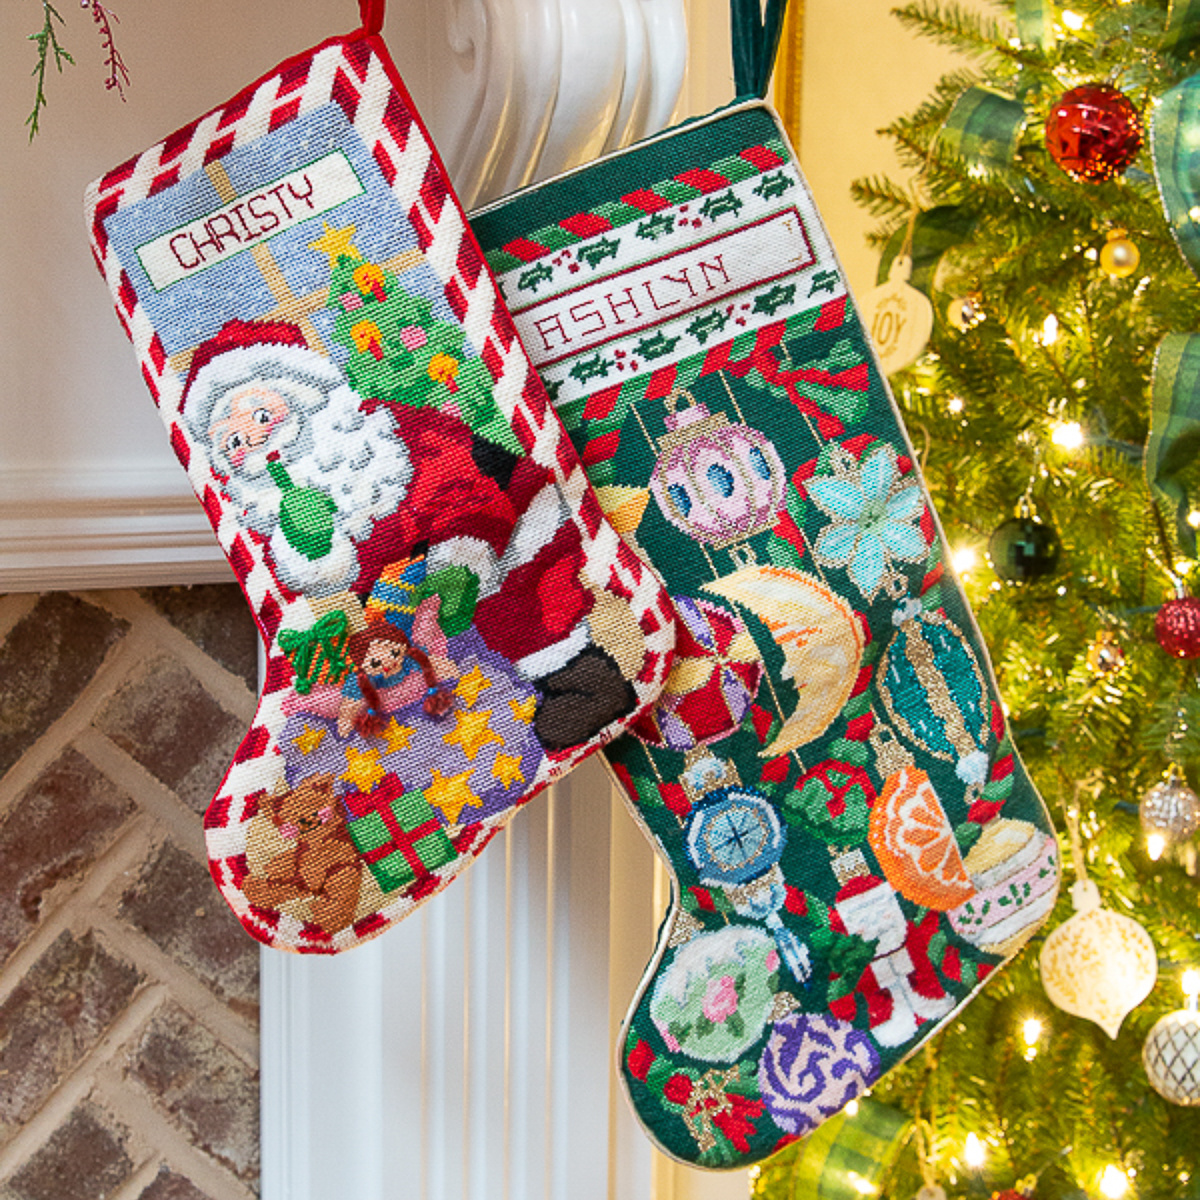 2 stocking hanging on mantel